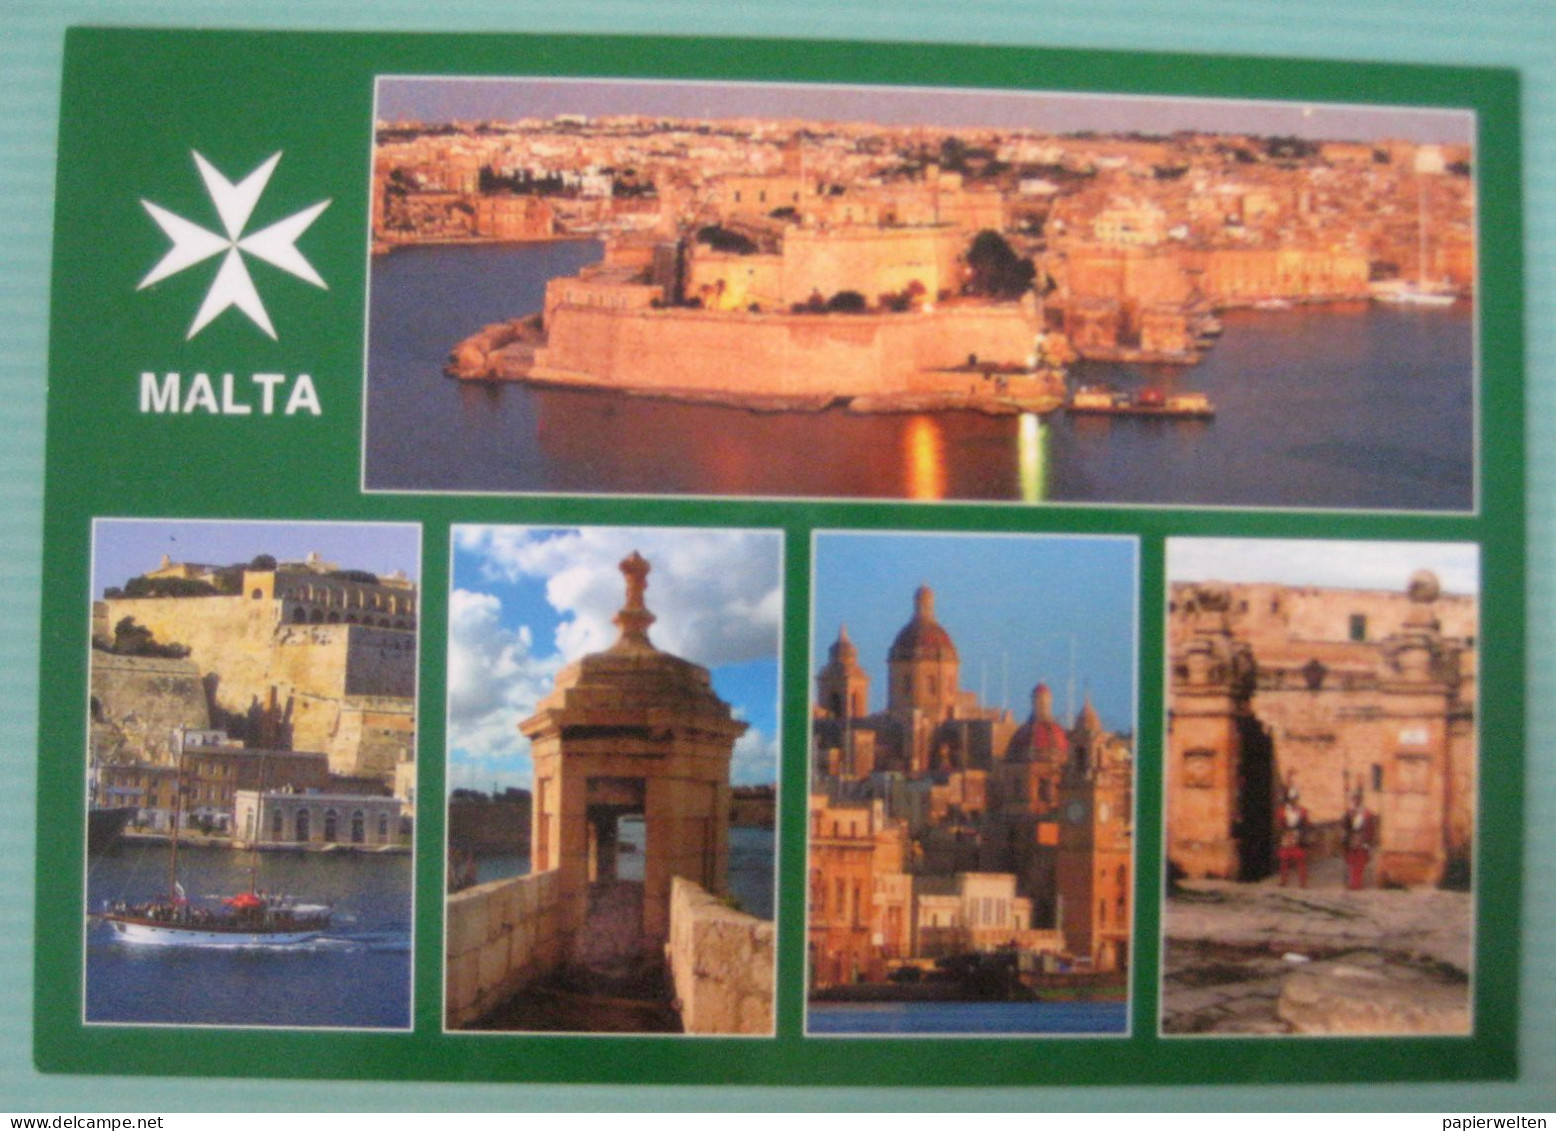 Mehrbildkarte "Malta" - Malte